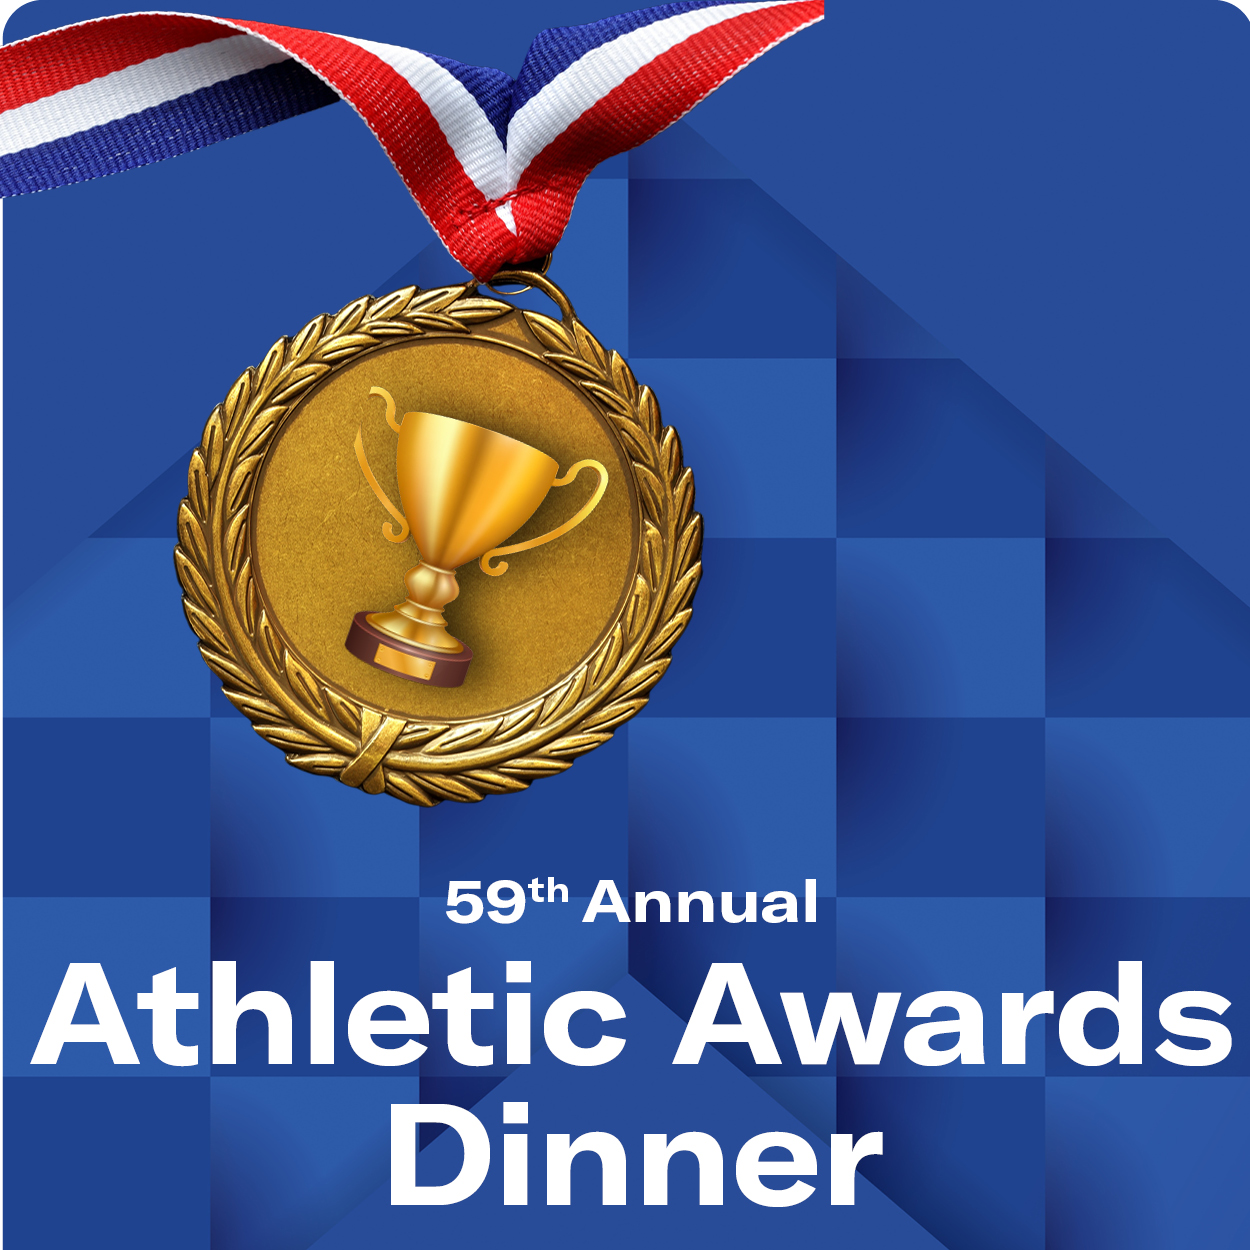 59th Annual Athletic Awards Dinner with Olympian John Mann